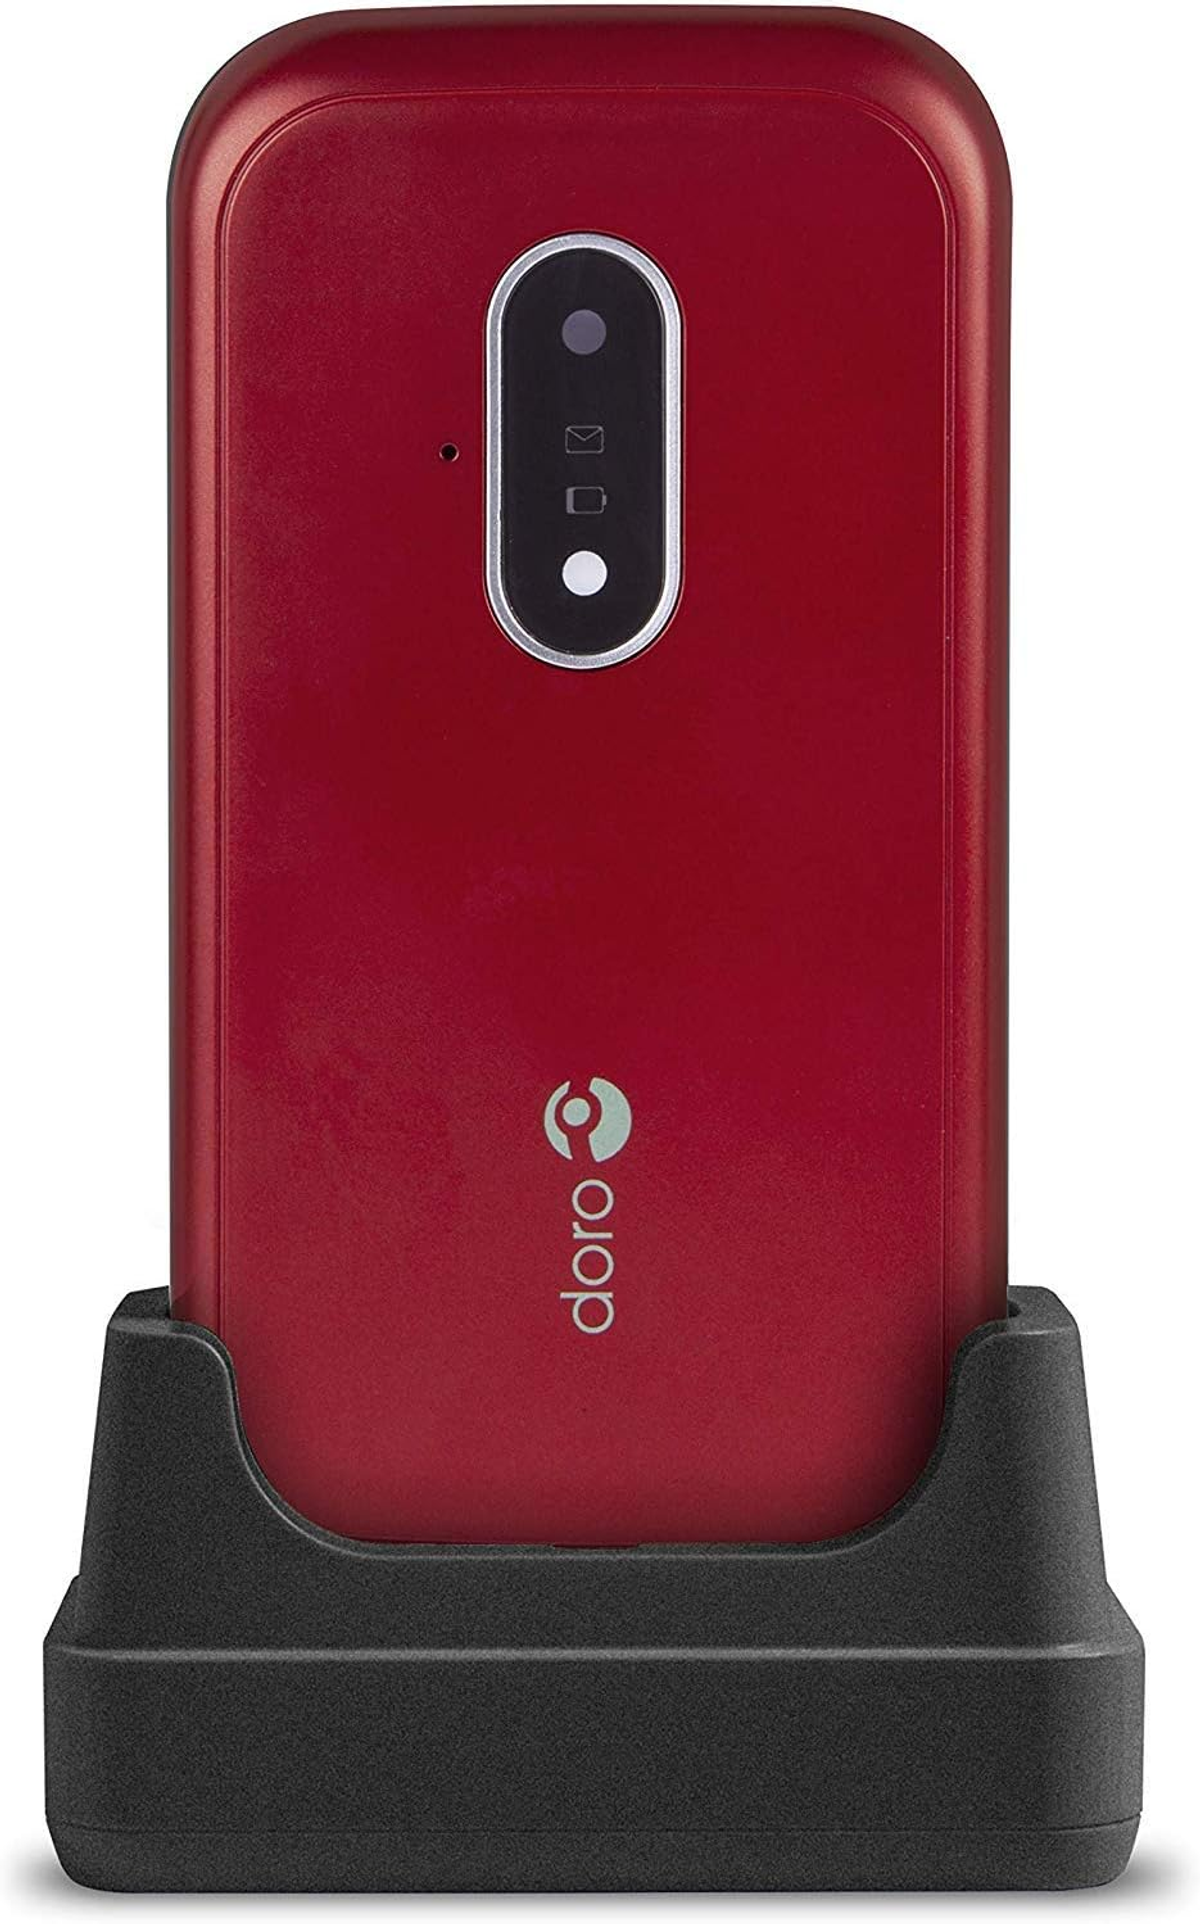 DORO 7030 ROT-WEISS Mobiltelefon, Rot/Weiss